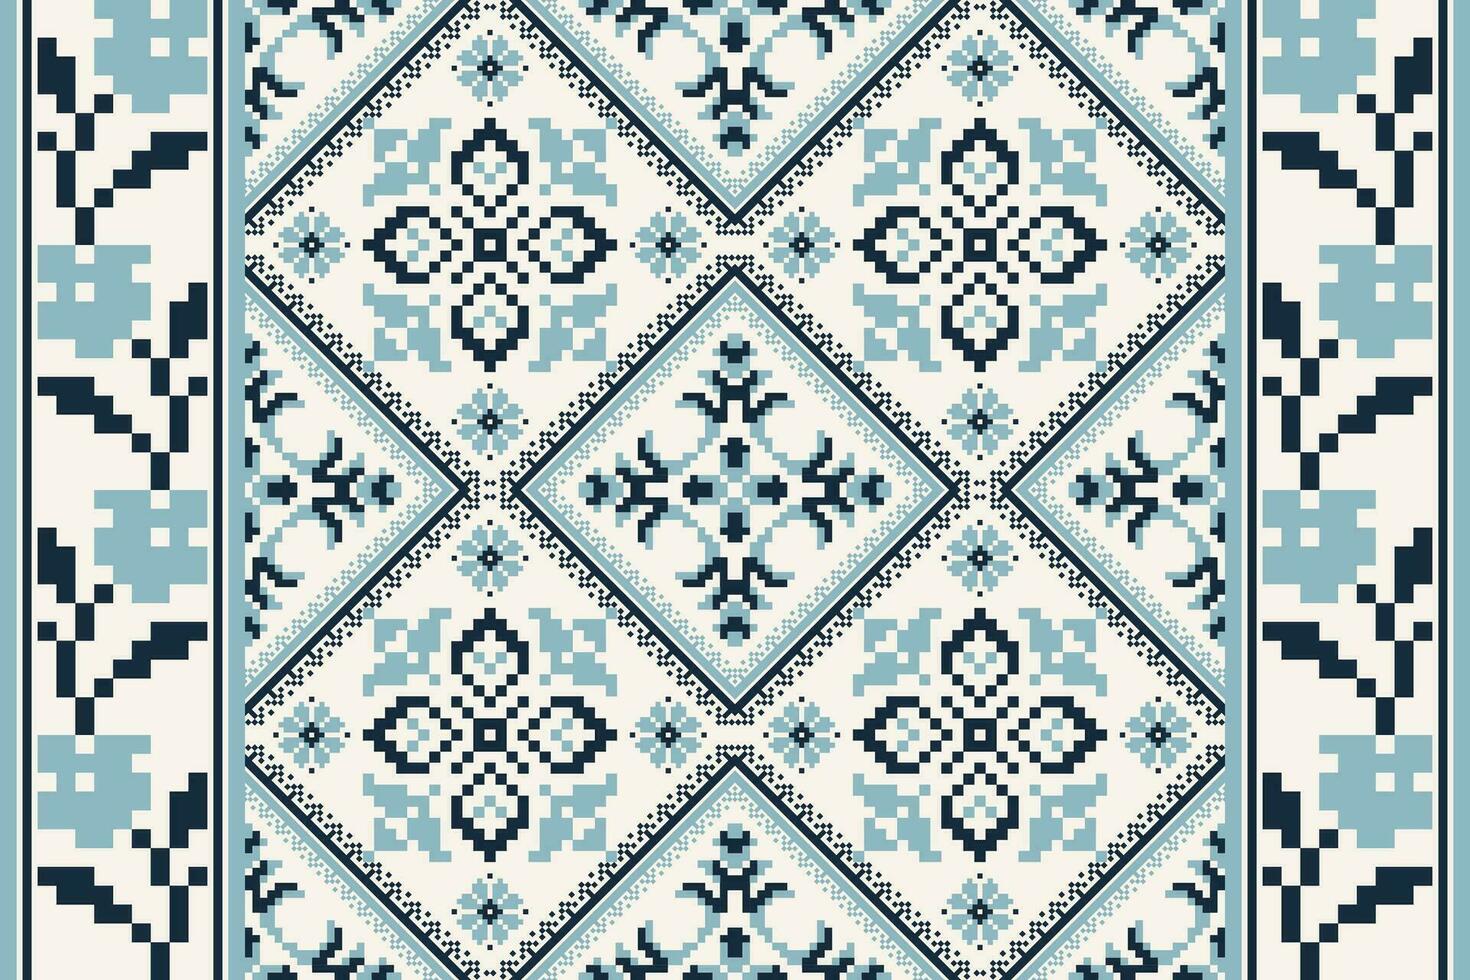 bloemen kruis steek borduurwerk Aan wit achtergrond.geometrisch etnisch orienta patroon traditioneel.azteken stijl abstract vector illustratie.ontwerp voor textuur, stof, kleding, verpakking, decoratie, tegel.